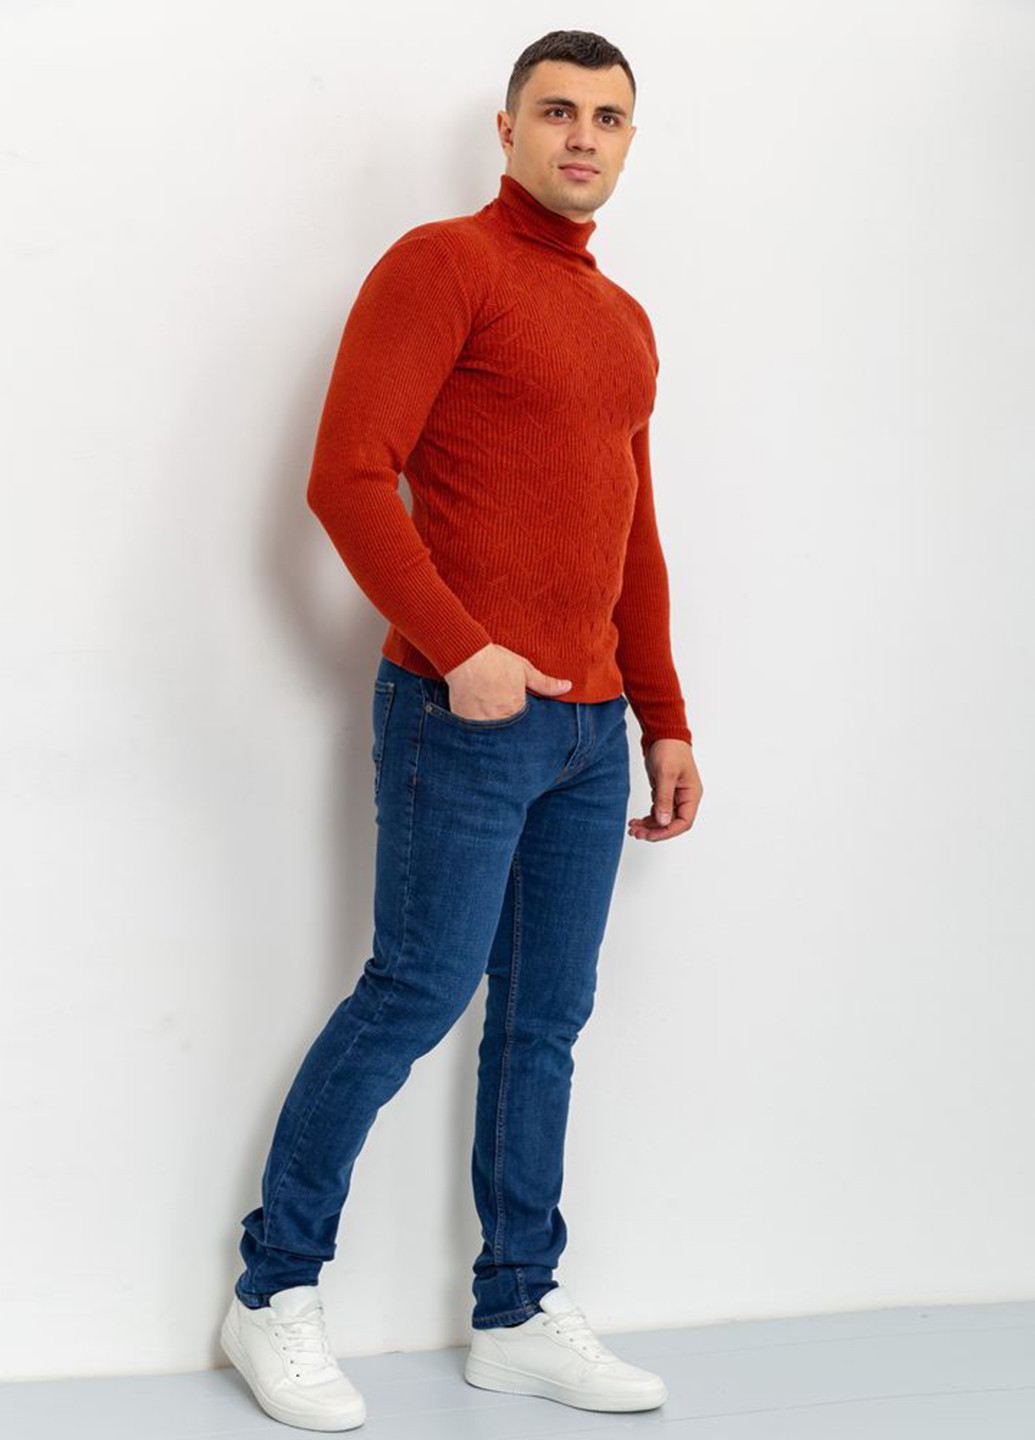 Терракотовый демисезонный свитер Ager